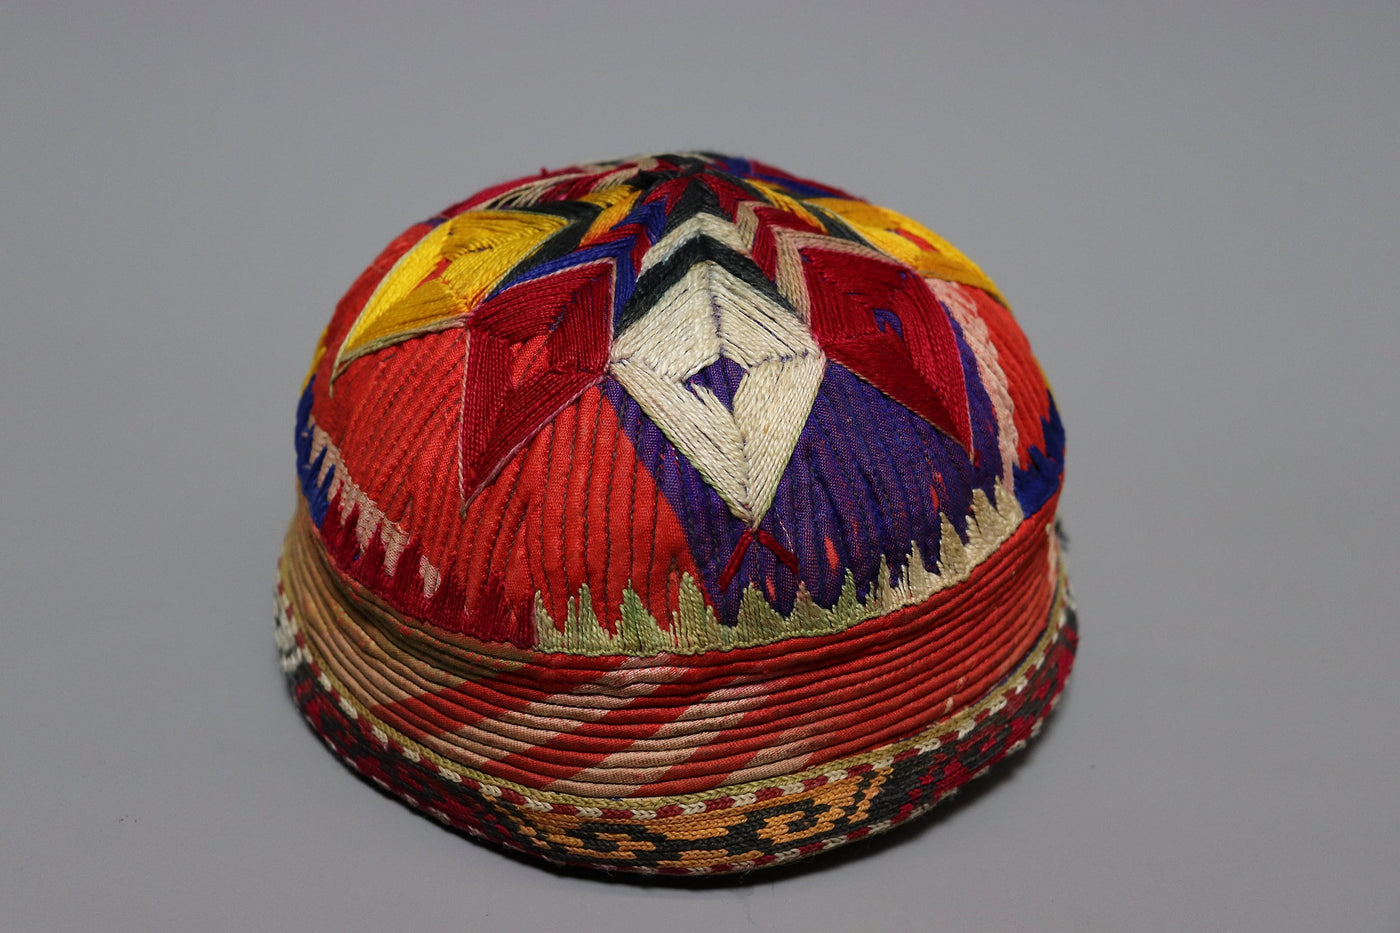 Antik handbestickte Mütze aus Afghanistan uzbekistan No:22/11  Orientsbazar   